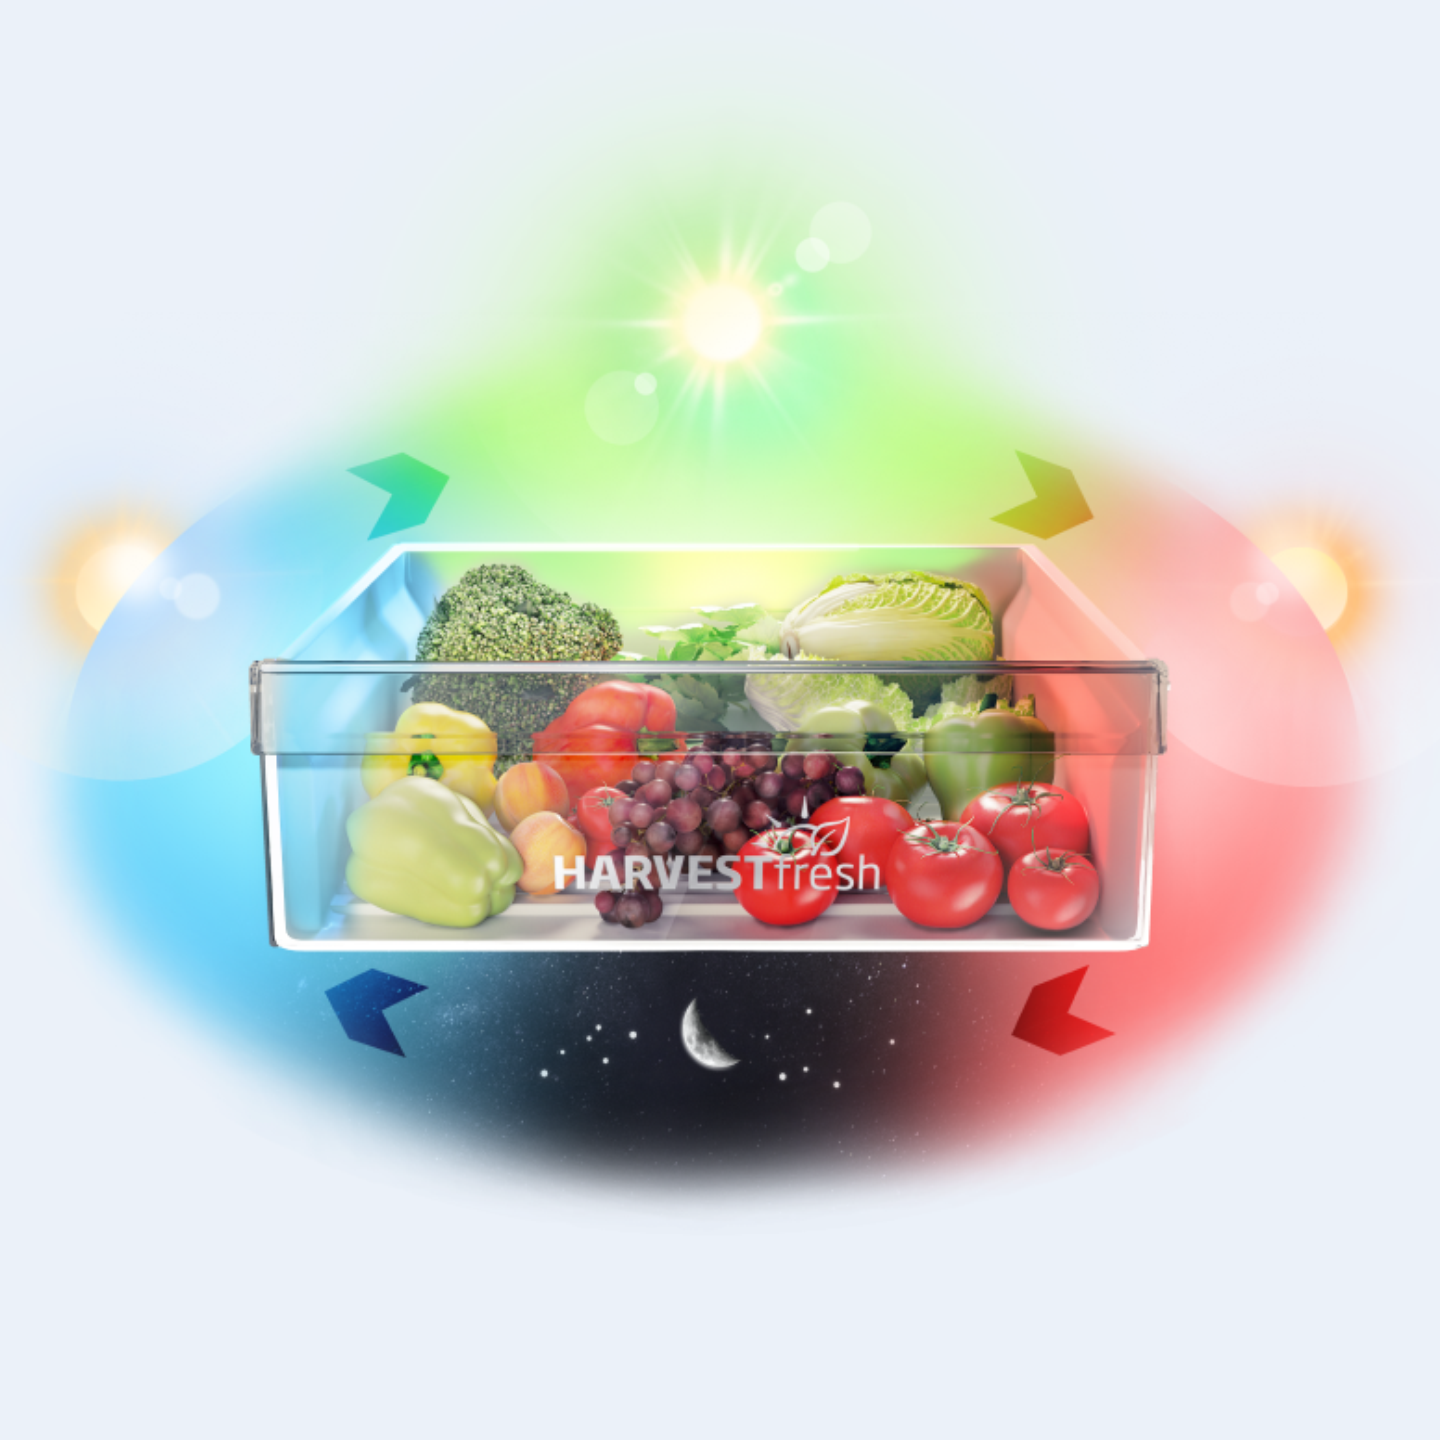 Versbak_van_een_koelkast_met_groente_en_fruit_met_24_uurs_zoncyclus.png